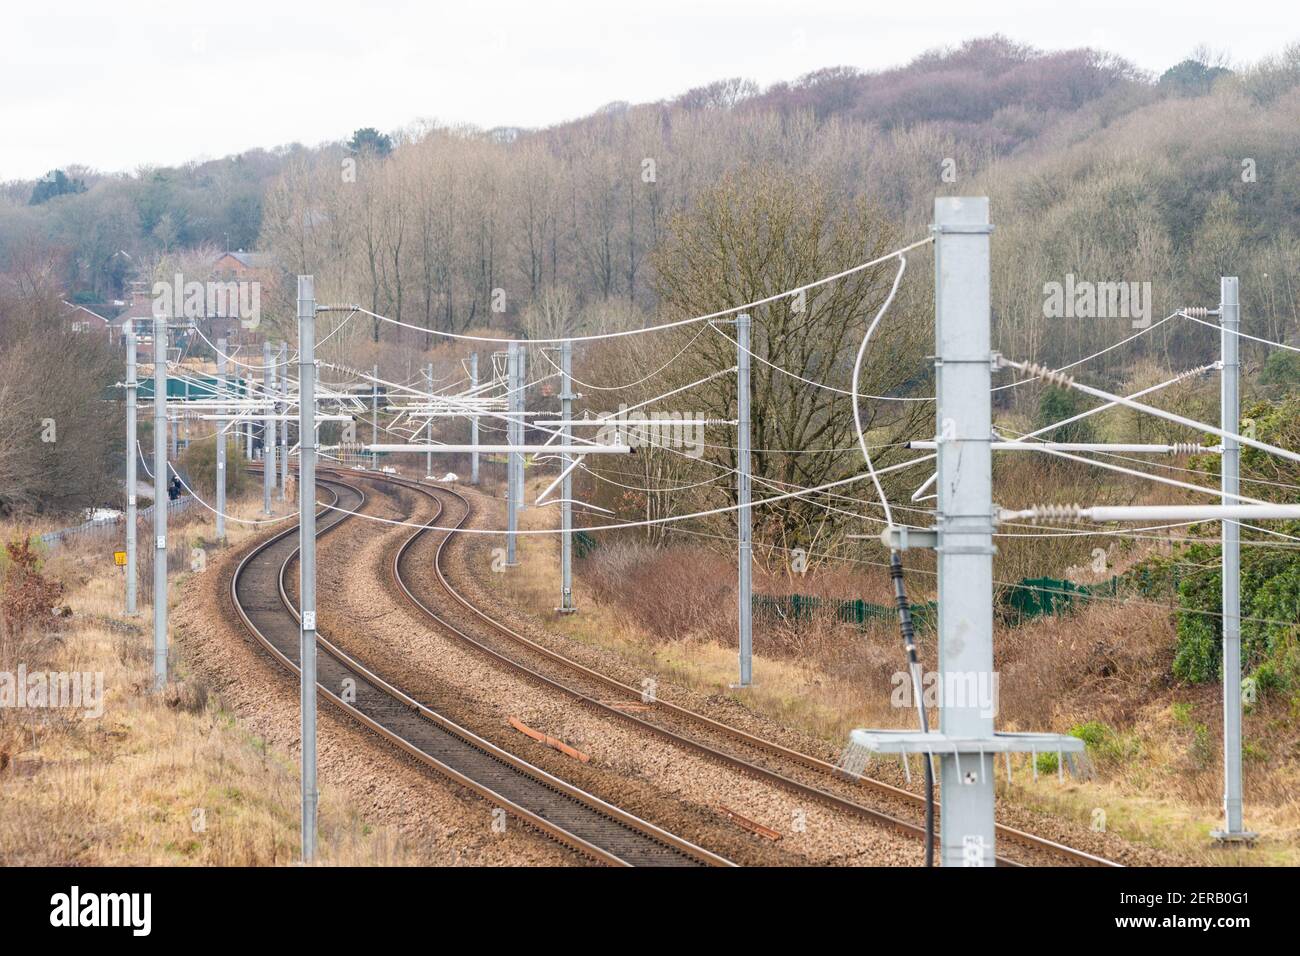 Oberleitungsausrüstung oder OHLE für elektrische Züge auf einem Britische Bahnlinie oder Bahnstrecke Stockfoto